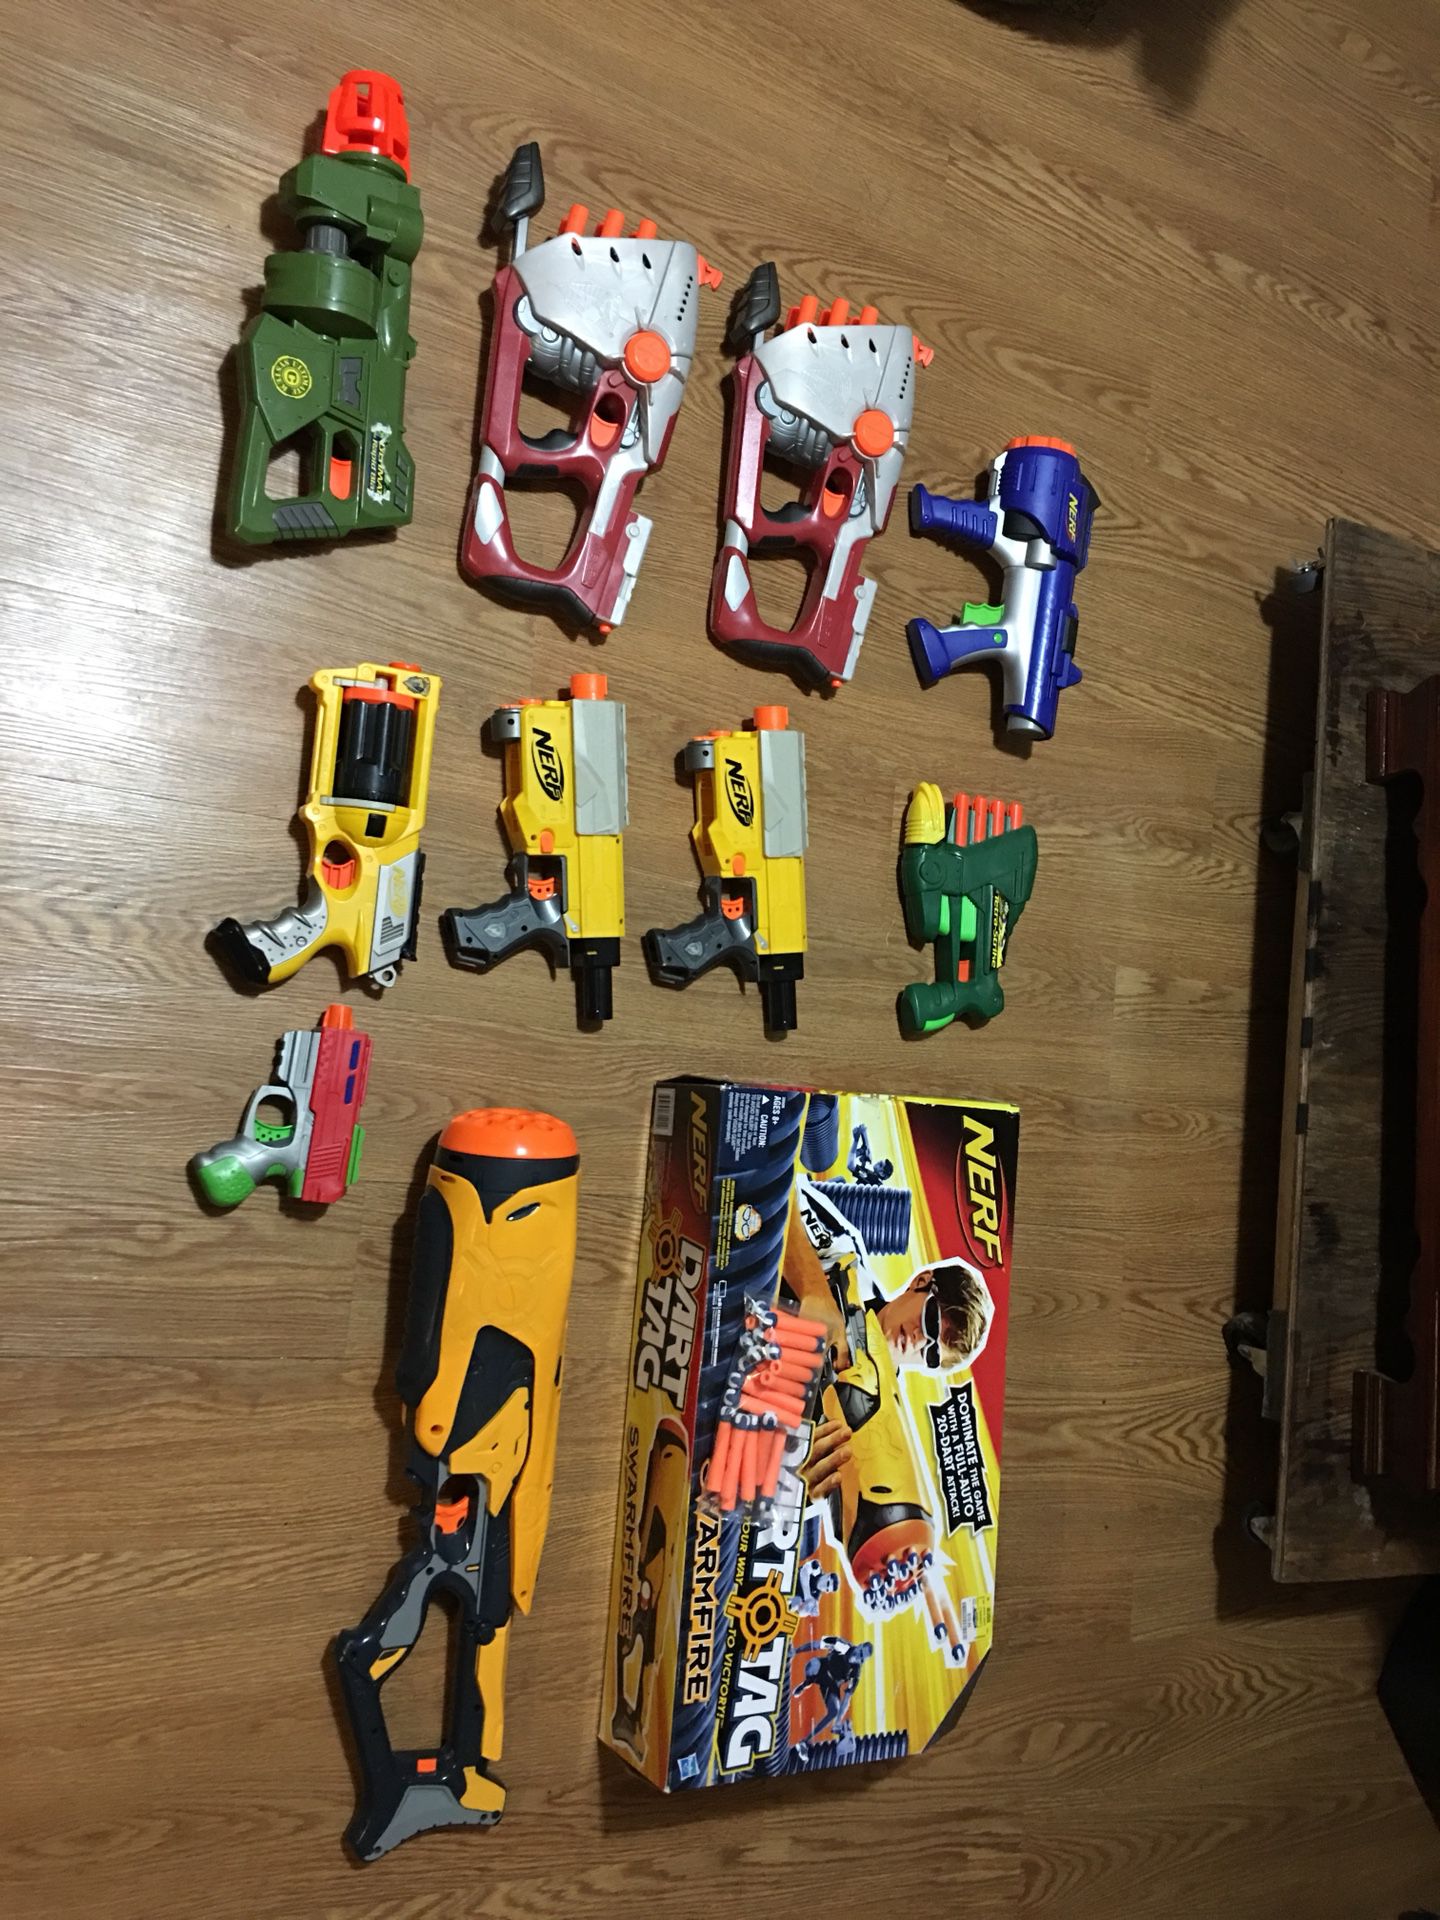 NERF gun toys